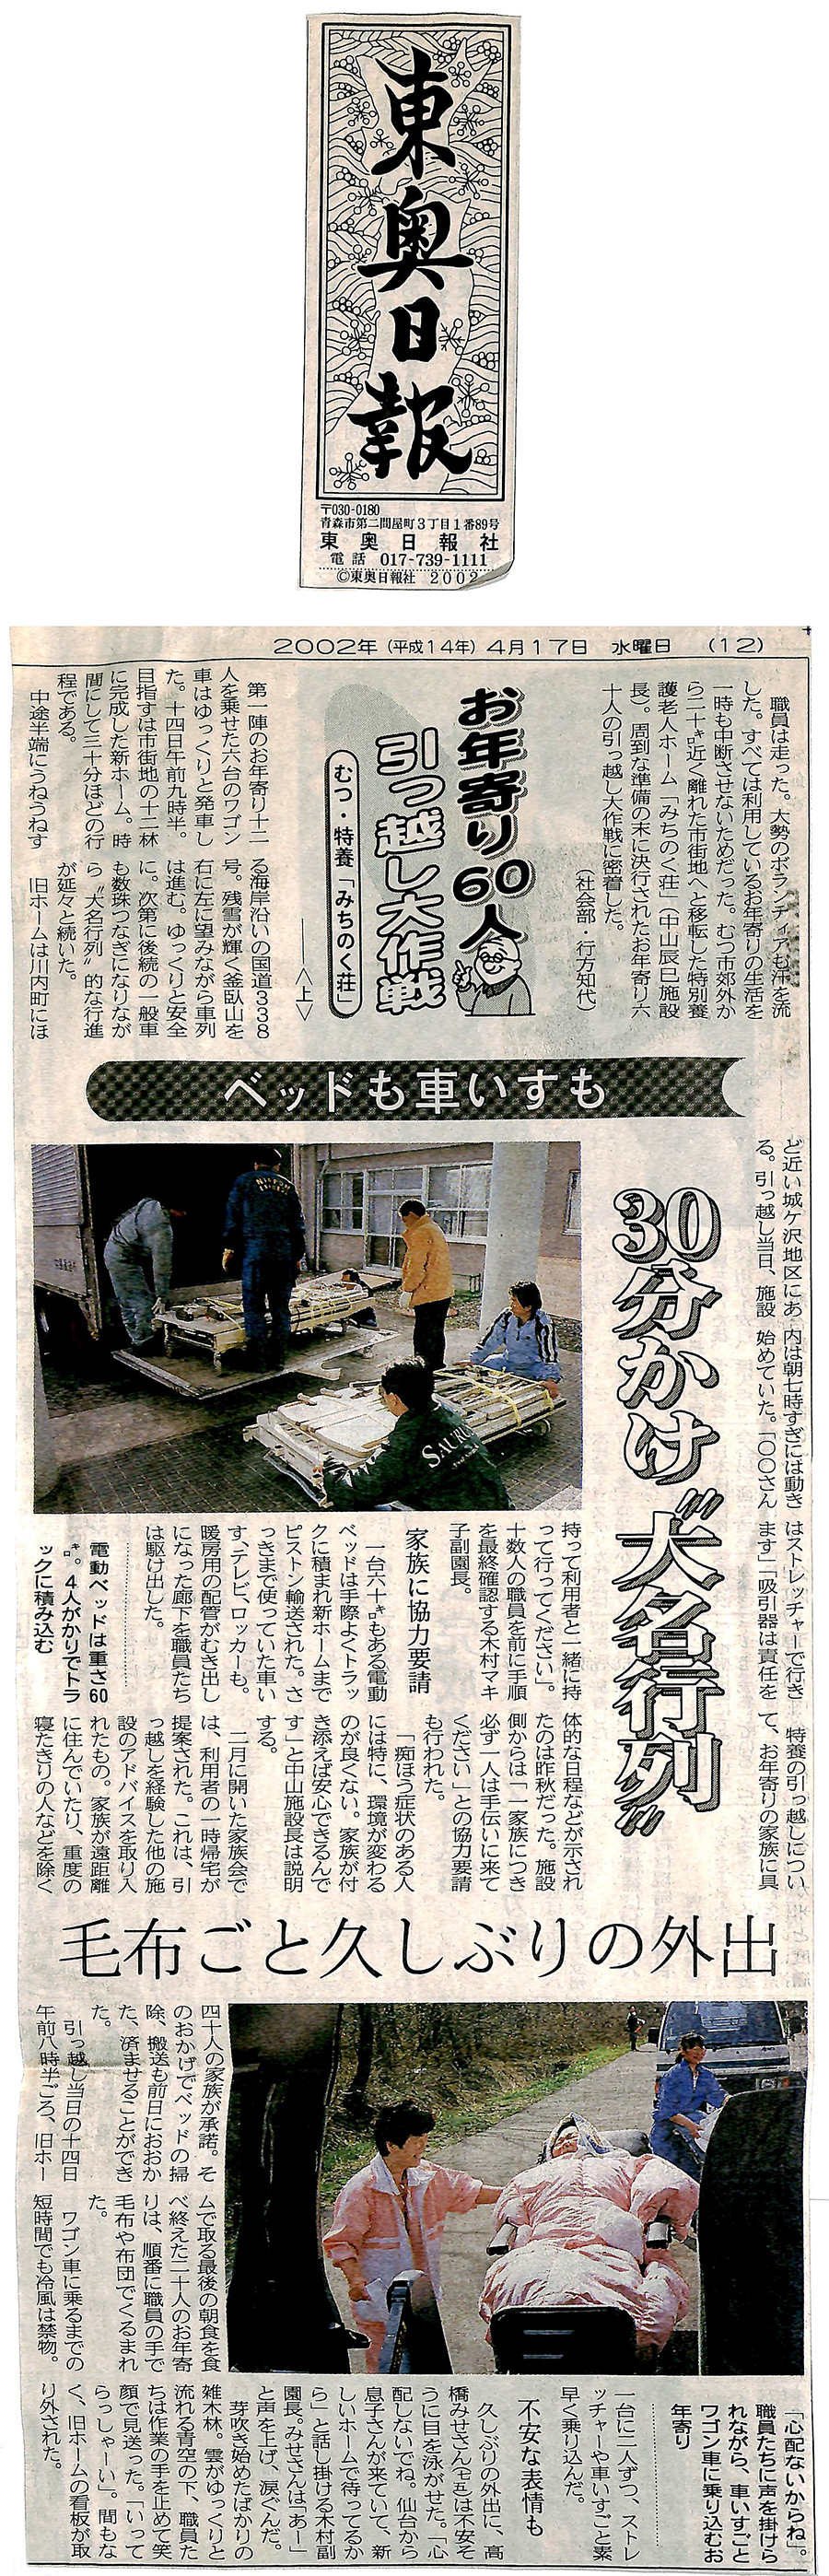 2002.4.17【東奥日報】お年寄り60人引っ越し大作戦 上 | 法人ニュース